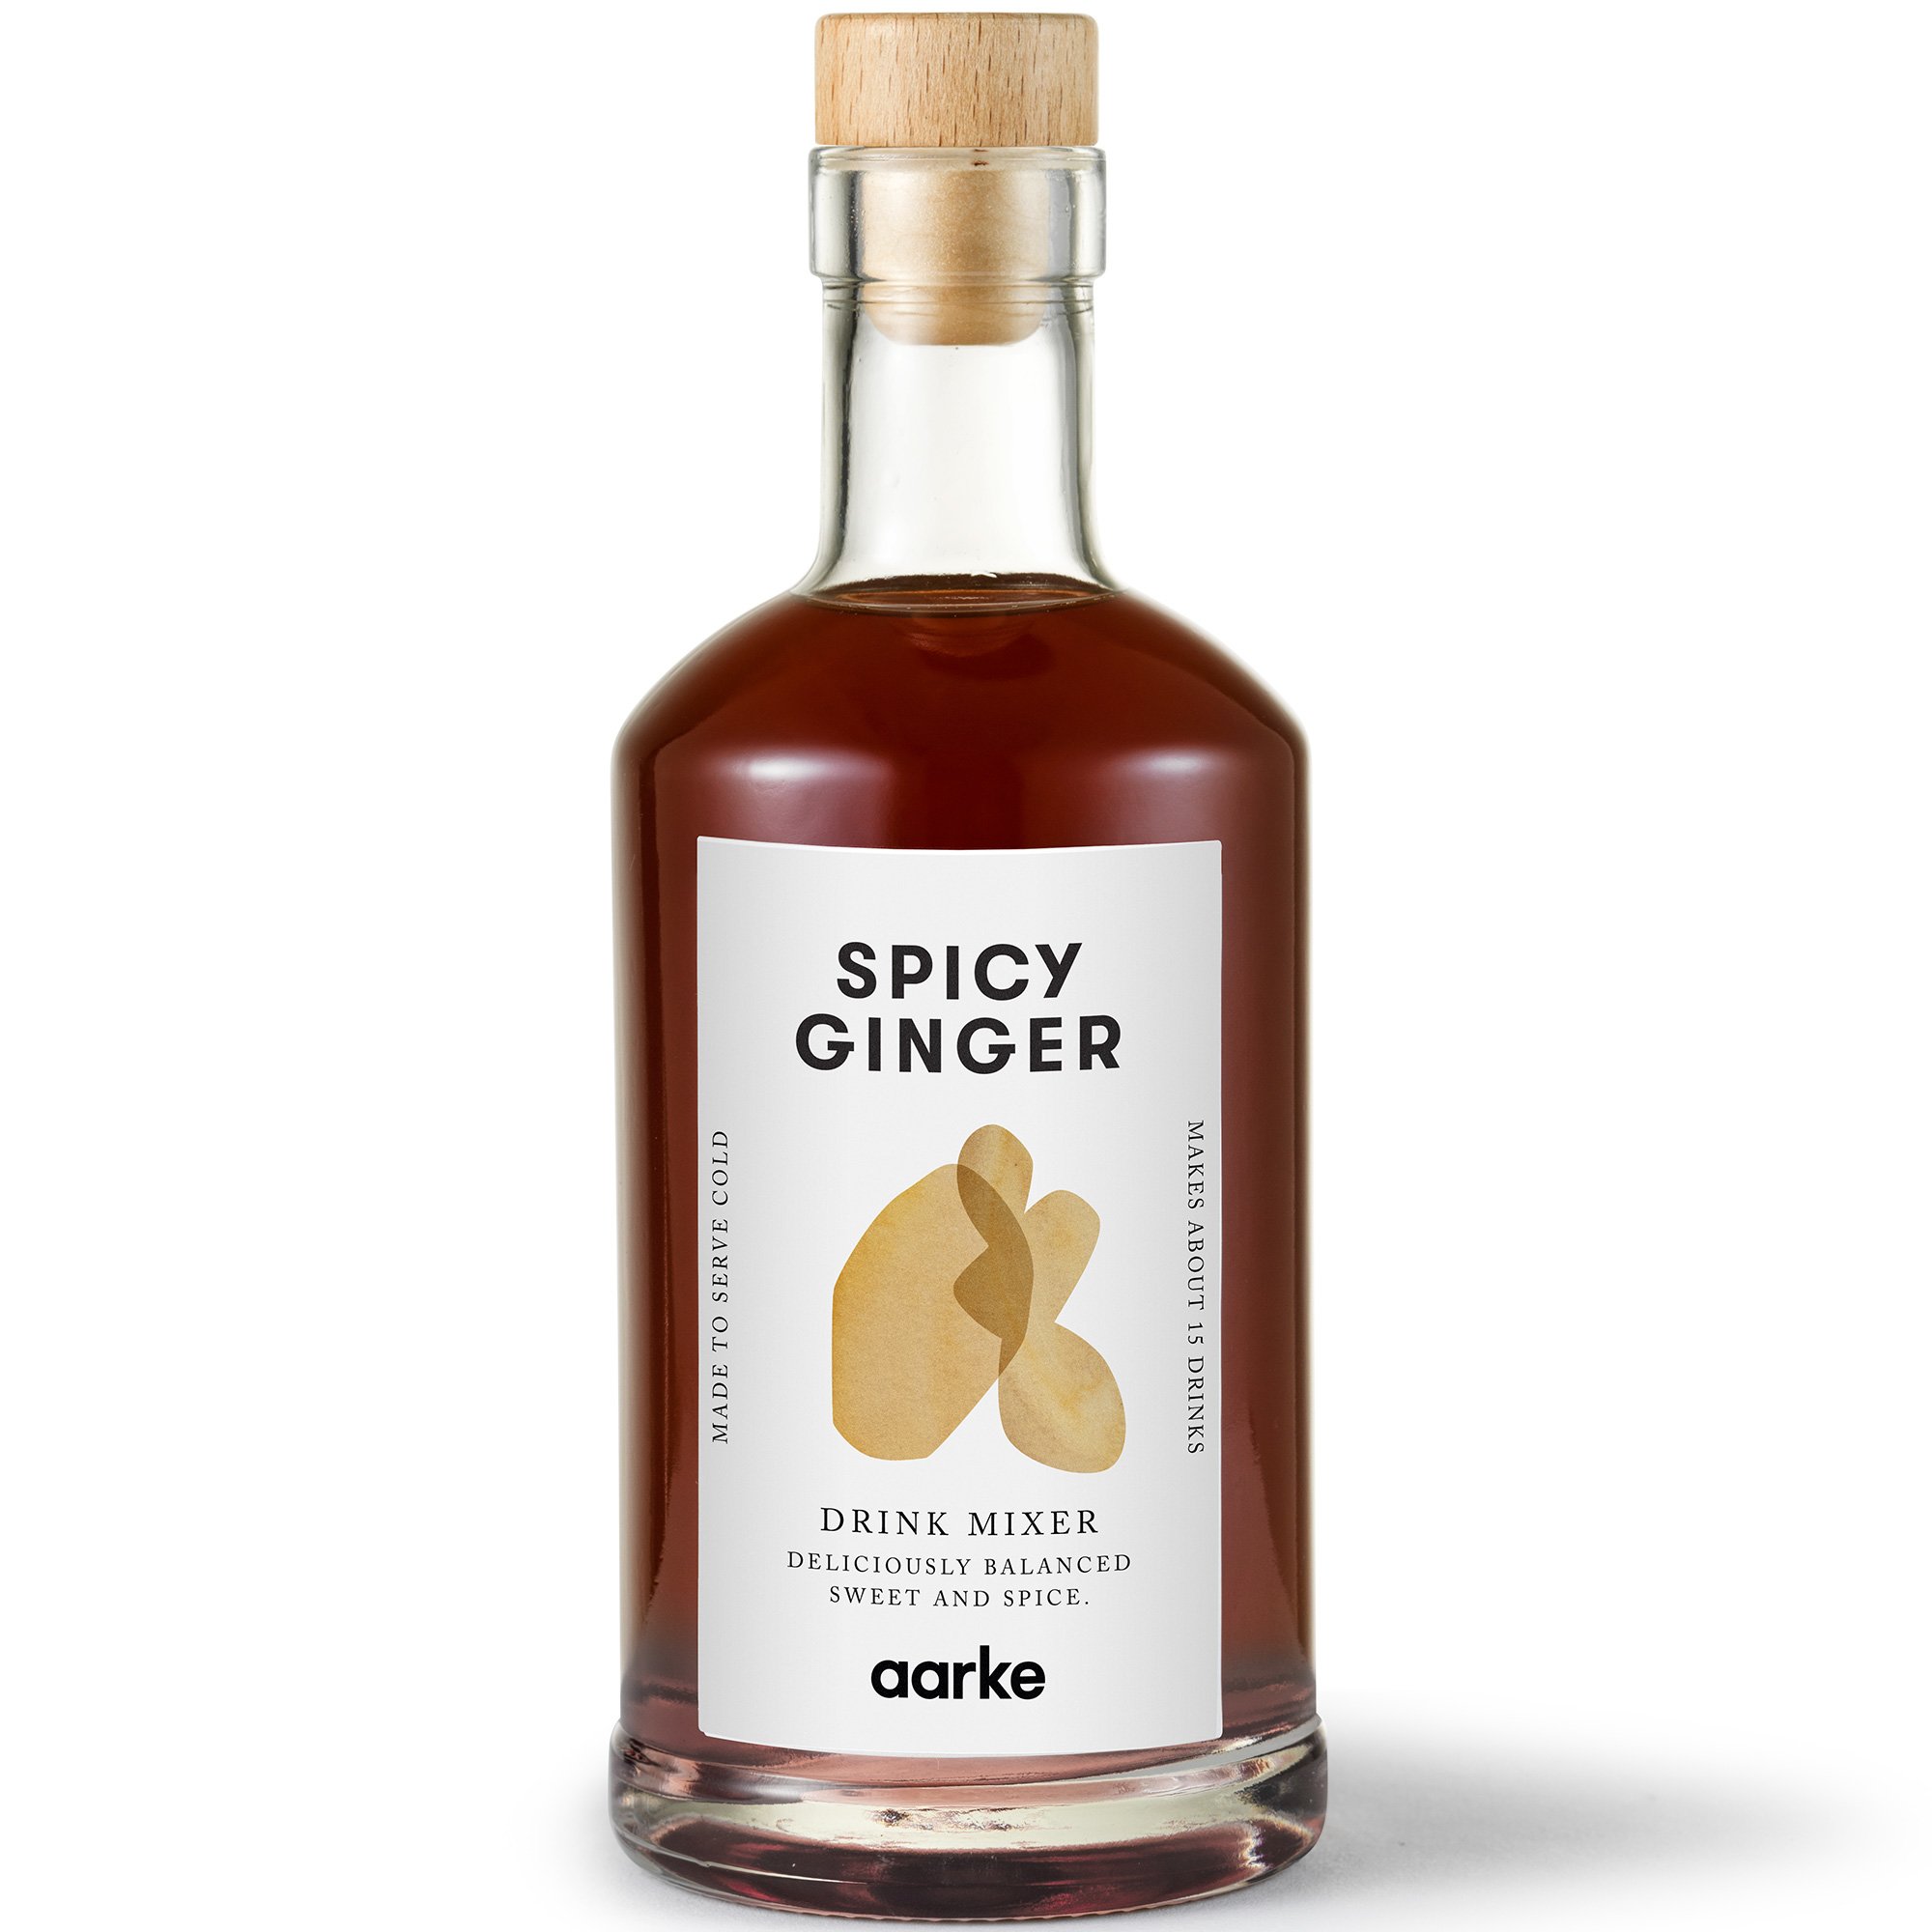 Aarke Drink mixer spicy ginger